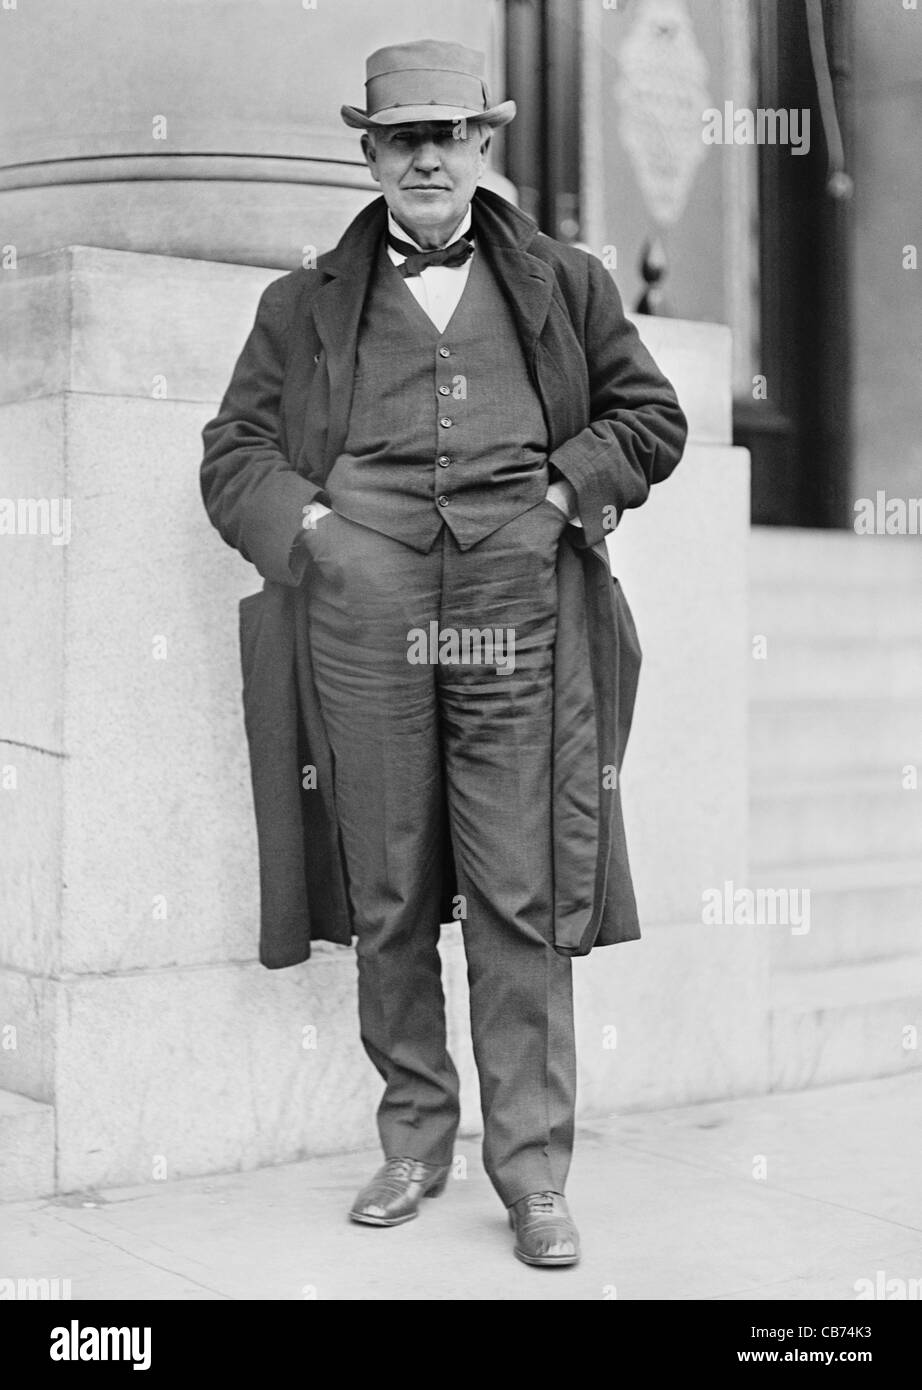 Photo d'époque de l'inventeur et homme d'affaires américain Thomas Alva Edison (1847 – 1931). Photo vers 1911 par Harris & Ewing. Banque D'Images